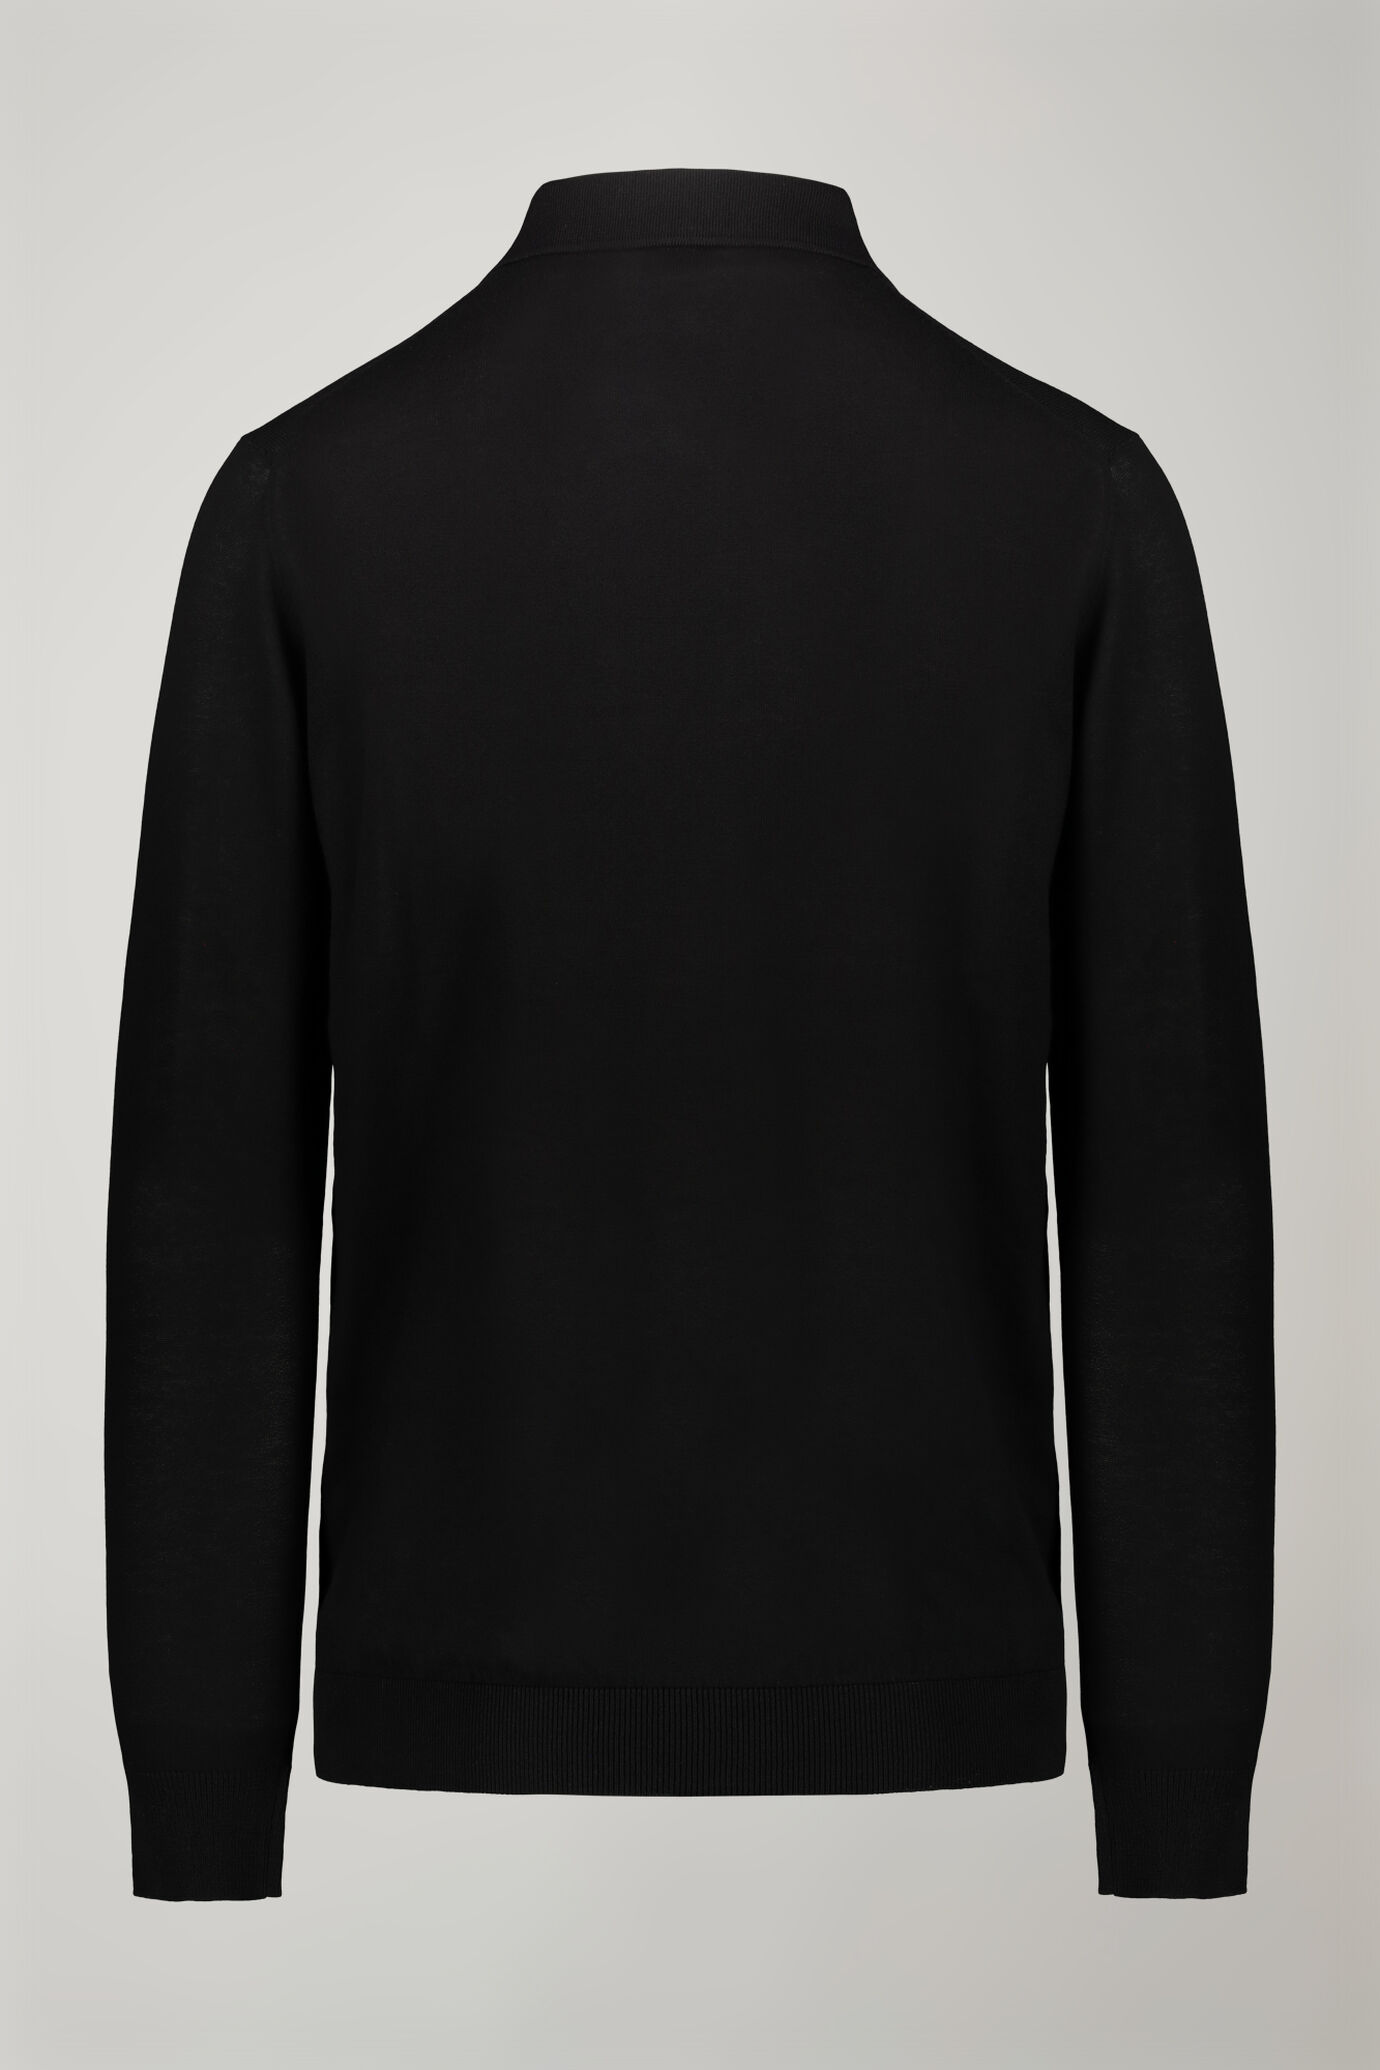 Herren-Poloshirt mit V-Ausschnitt aus 100 % Baumwollstrick und langen Ärmeln in normaler Passform image number 7